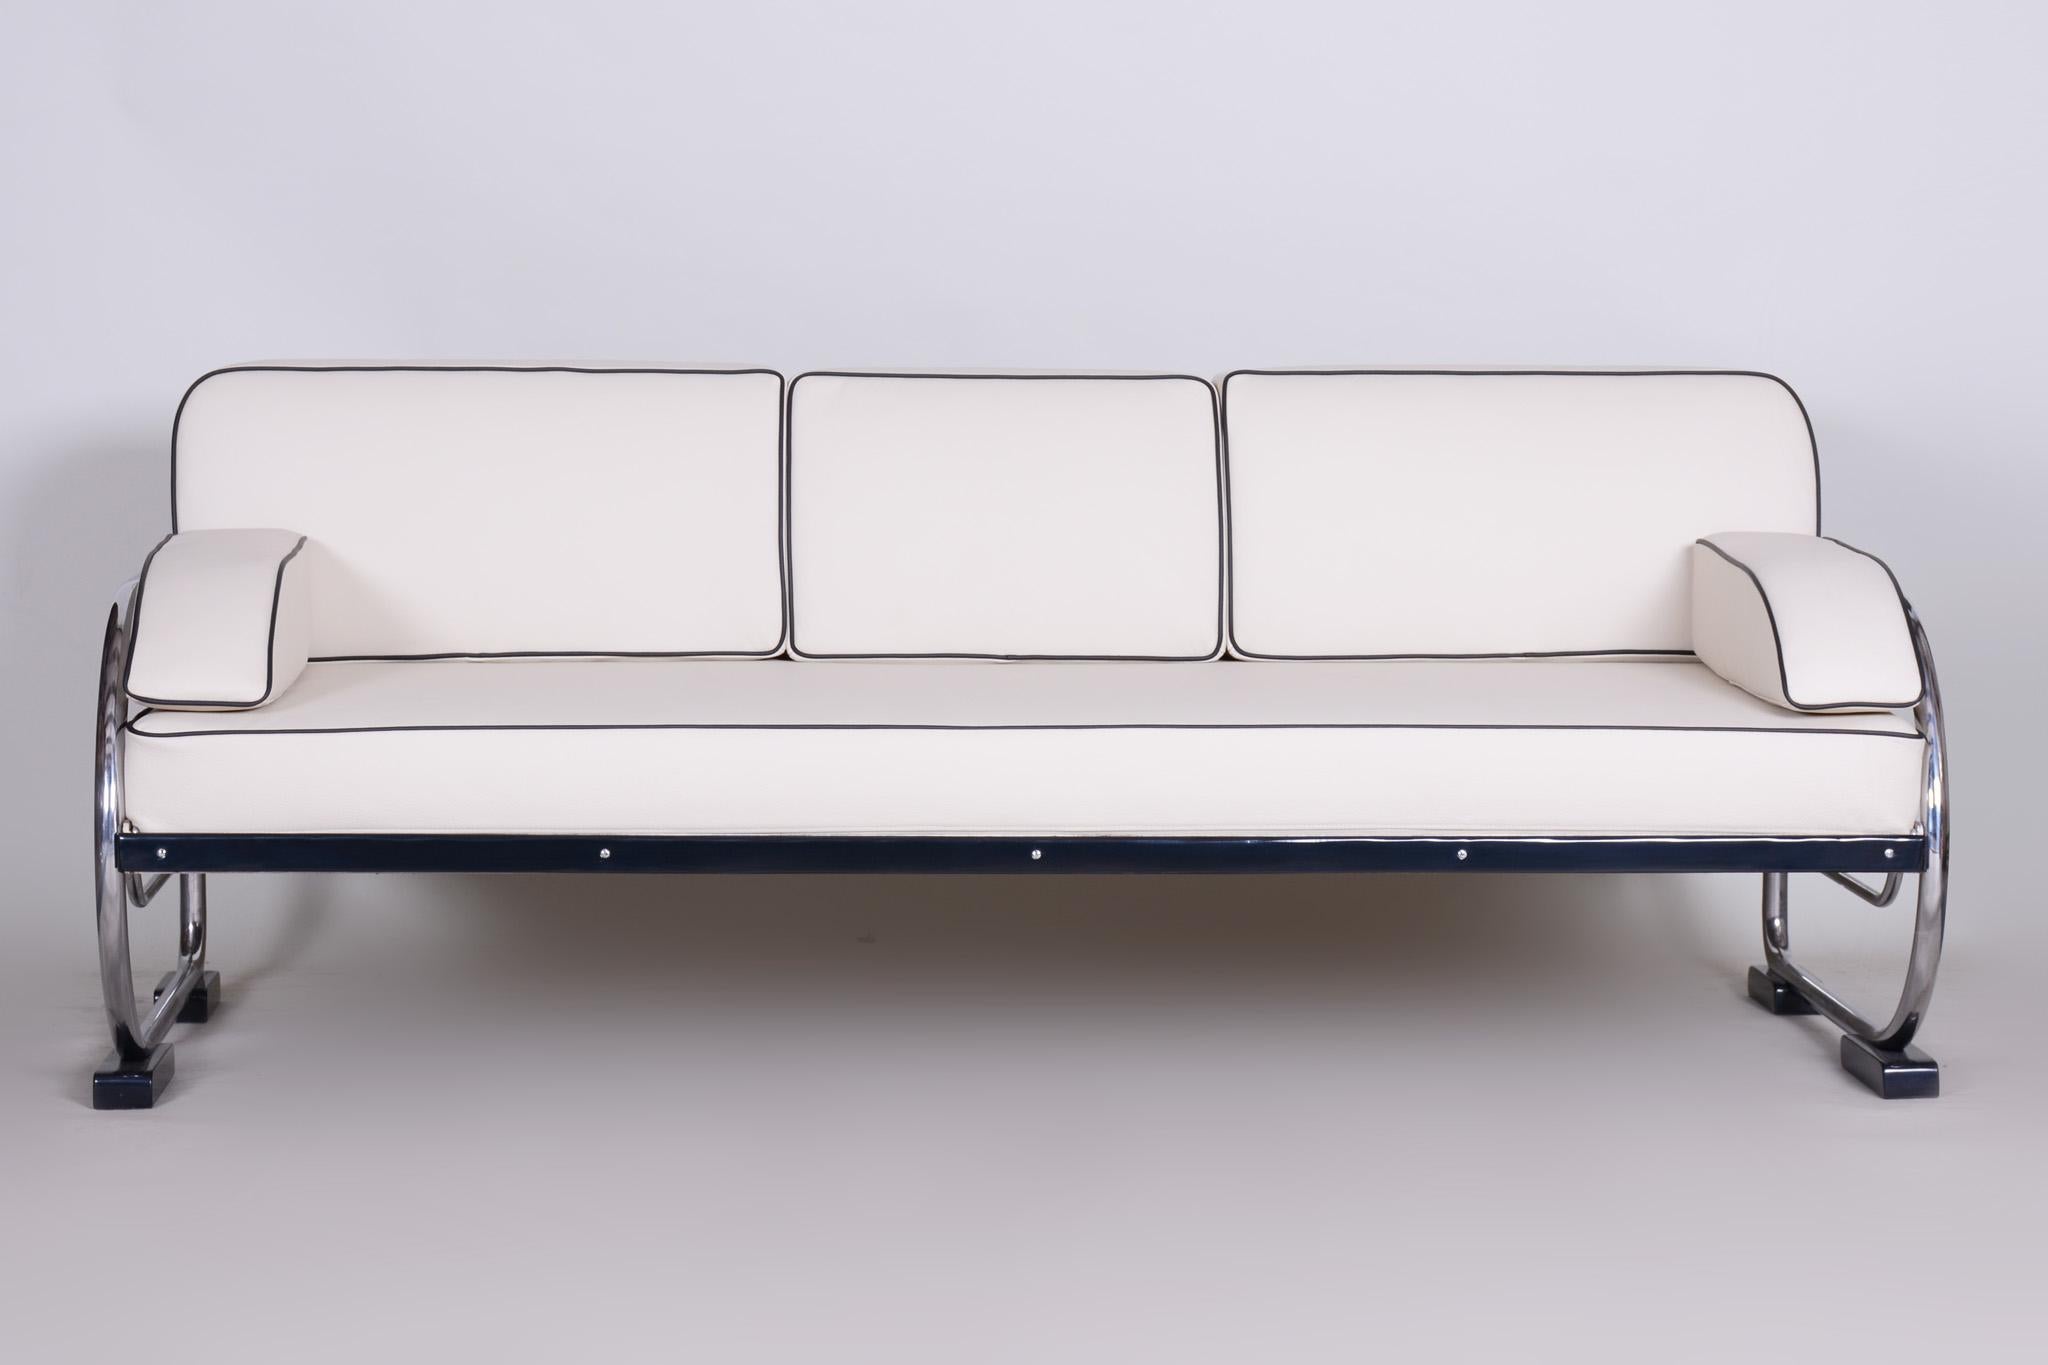 Sofa im Bauhaus-Stil mit verchromtem Stahlrohrgestell.
Hergestellt von Robert Slezák in den 1930er Jahren.
Das verchromte Stahlrohr ist in perfektem Originalzustand.
Gepolstert mit hochwertigem weißem Leder.
Quelle: Tschechische Republik